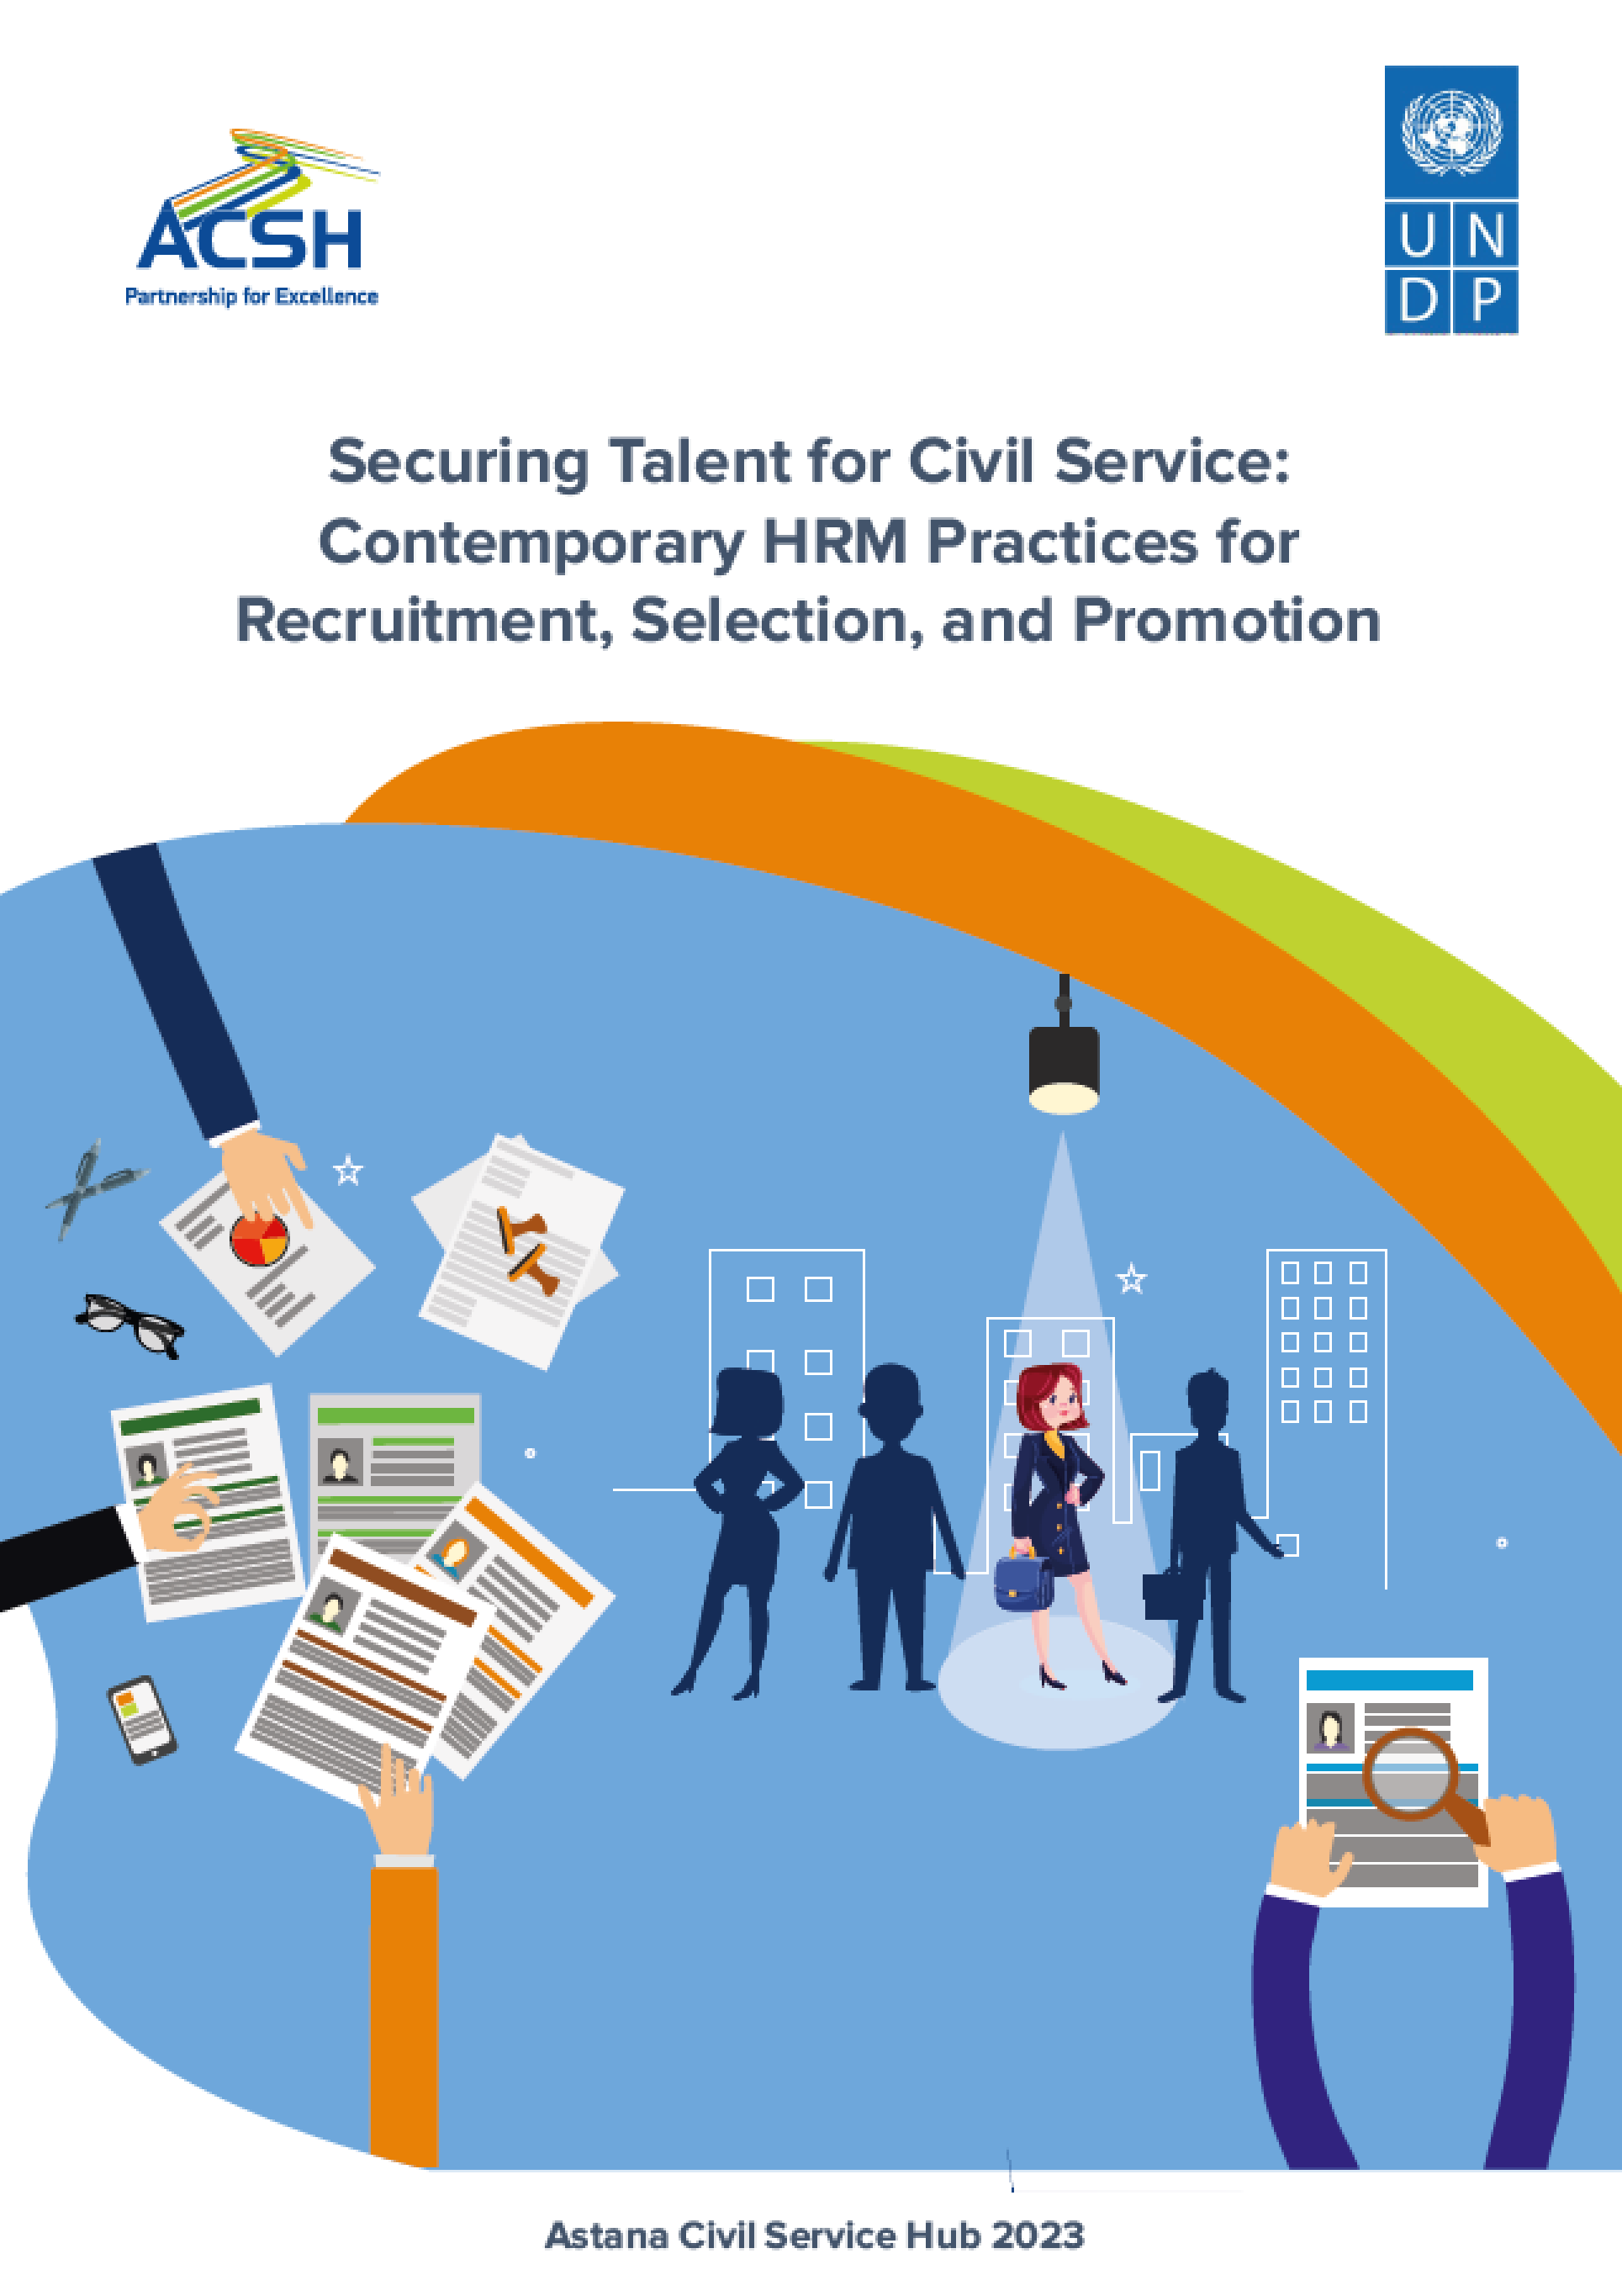 Обеспечение талантов для государственной службы: современные практики управления человеческими ресурсами для рекрутмента, отбора и продвижения по службе.